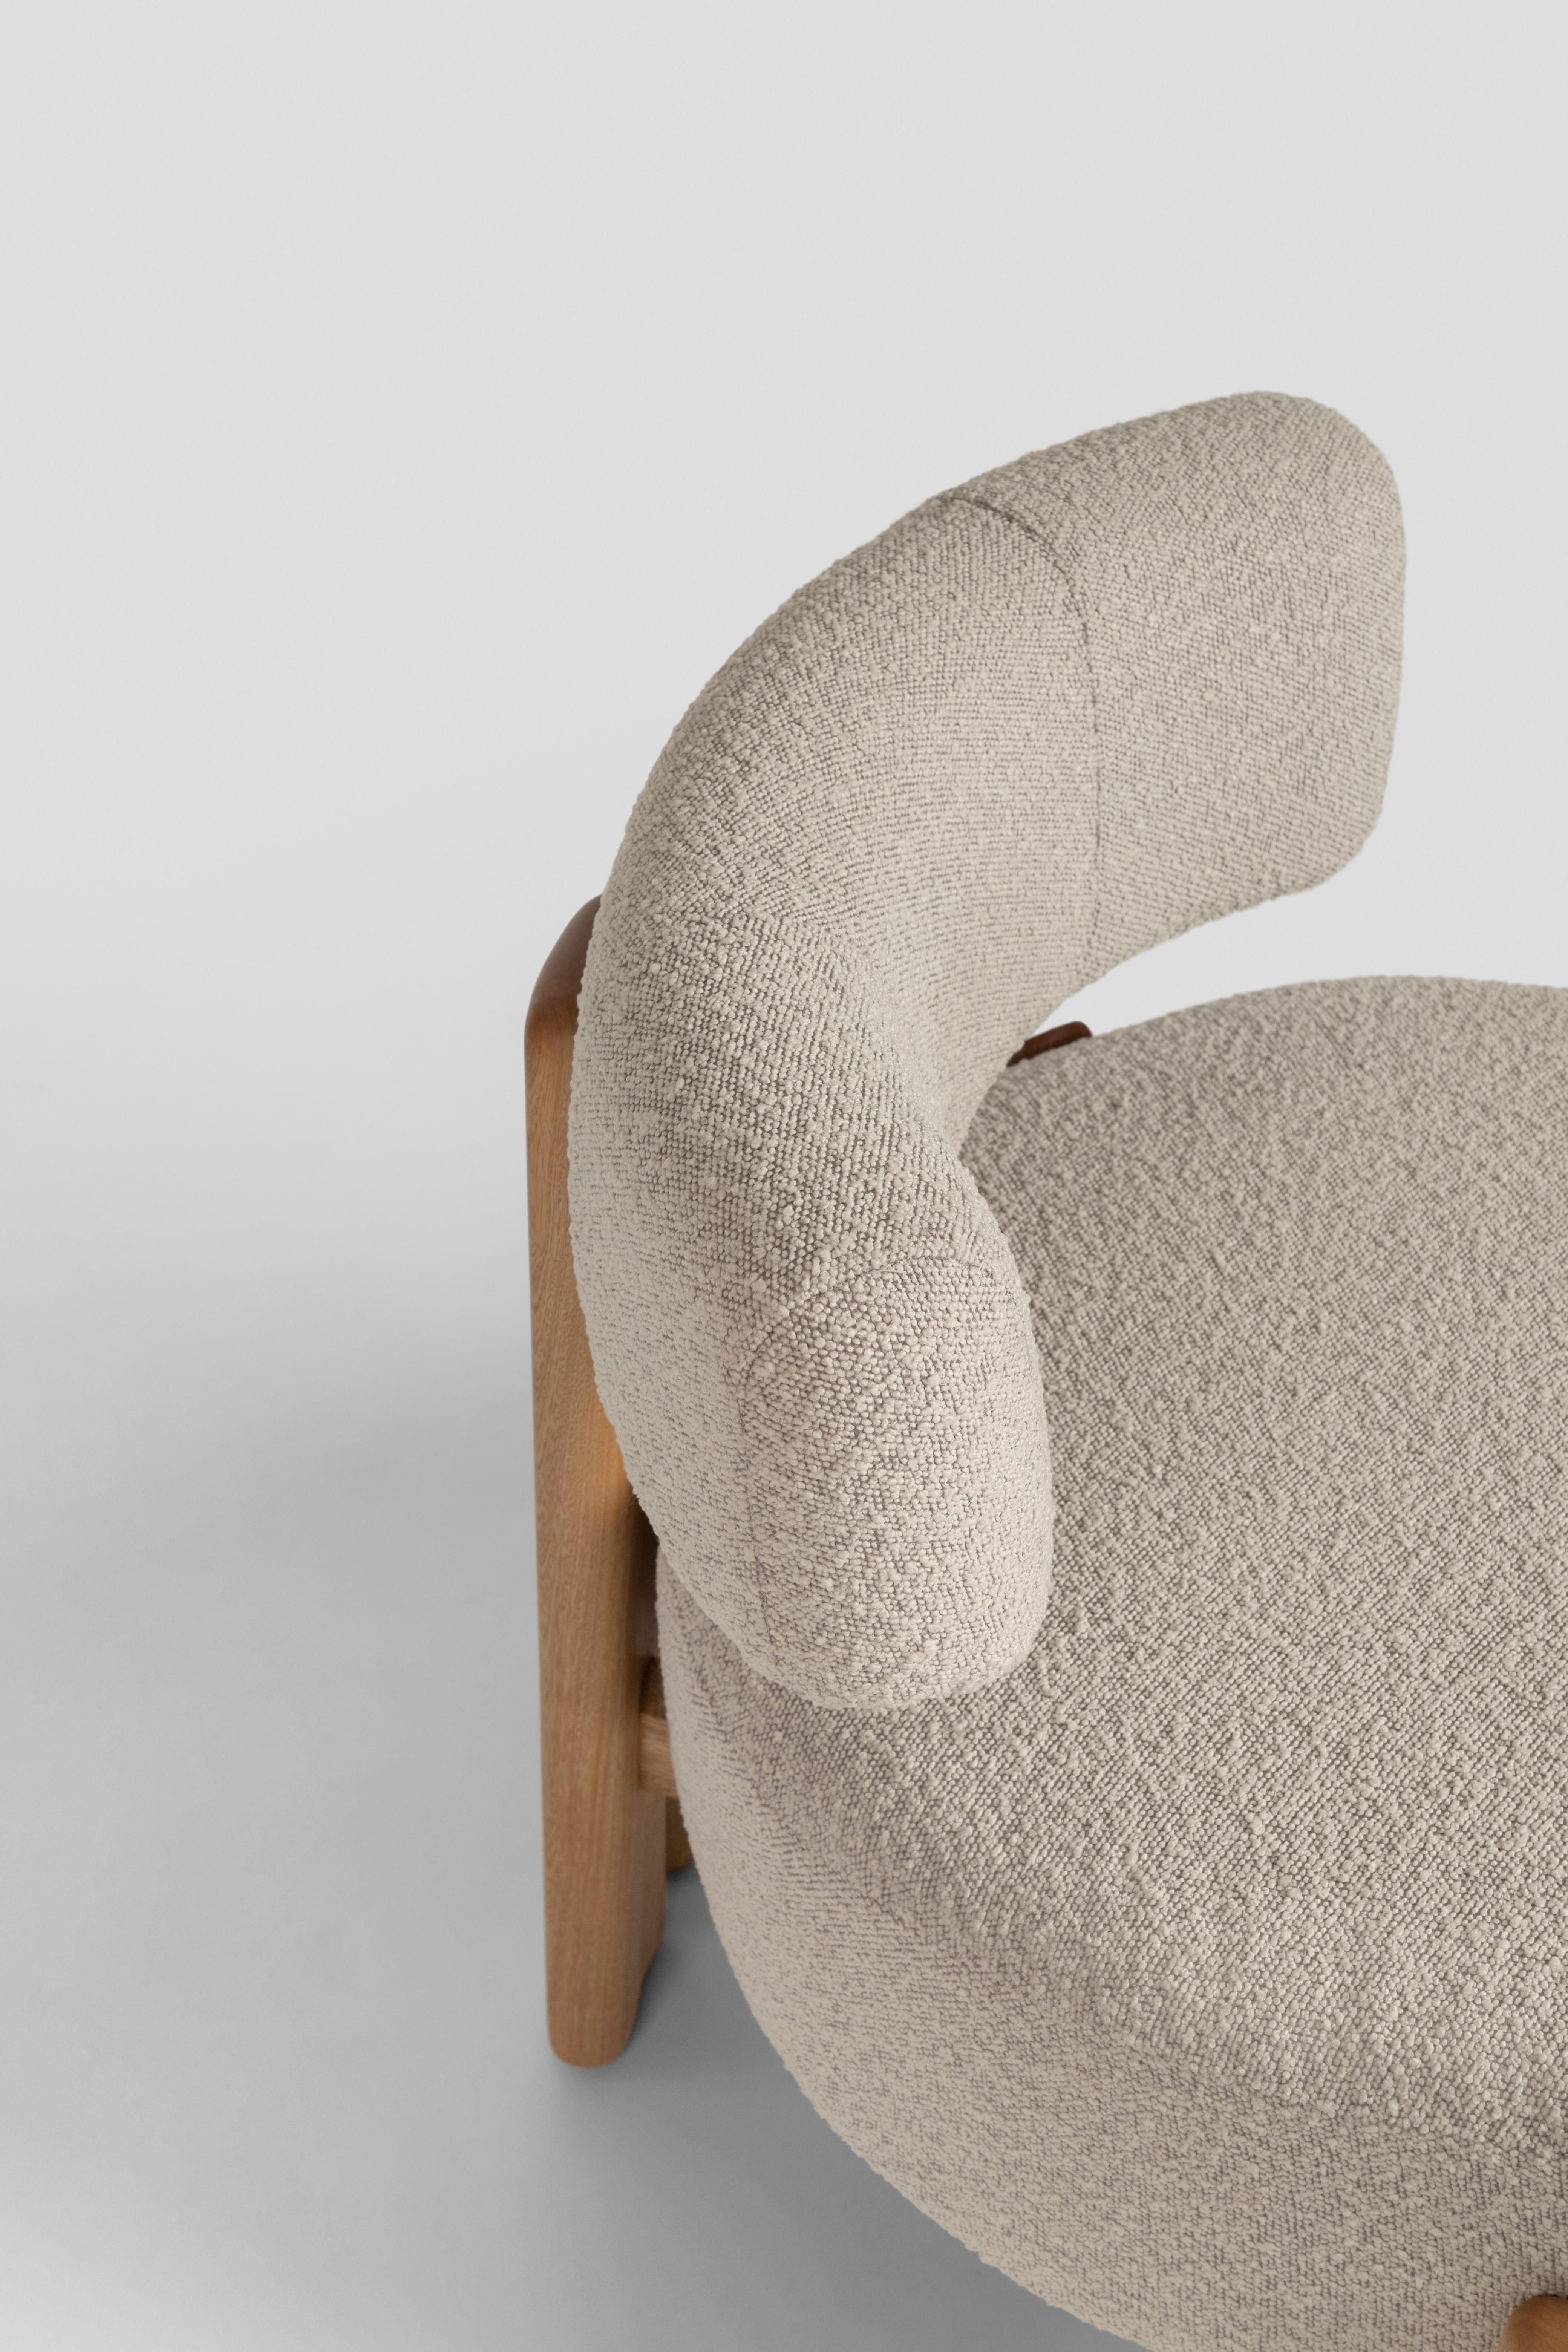 Moderne Chaise basse De la Paz Bois massif, Design/One contemporain mexicain en vente